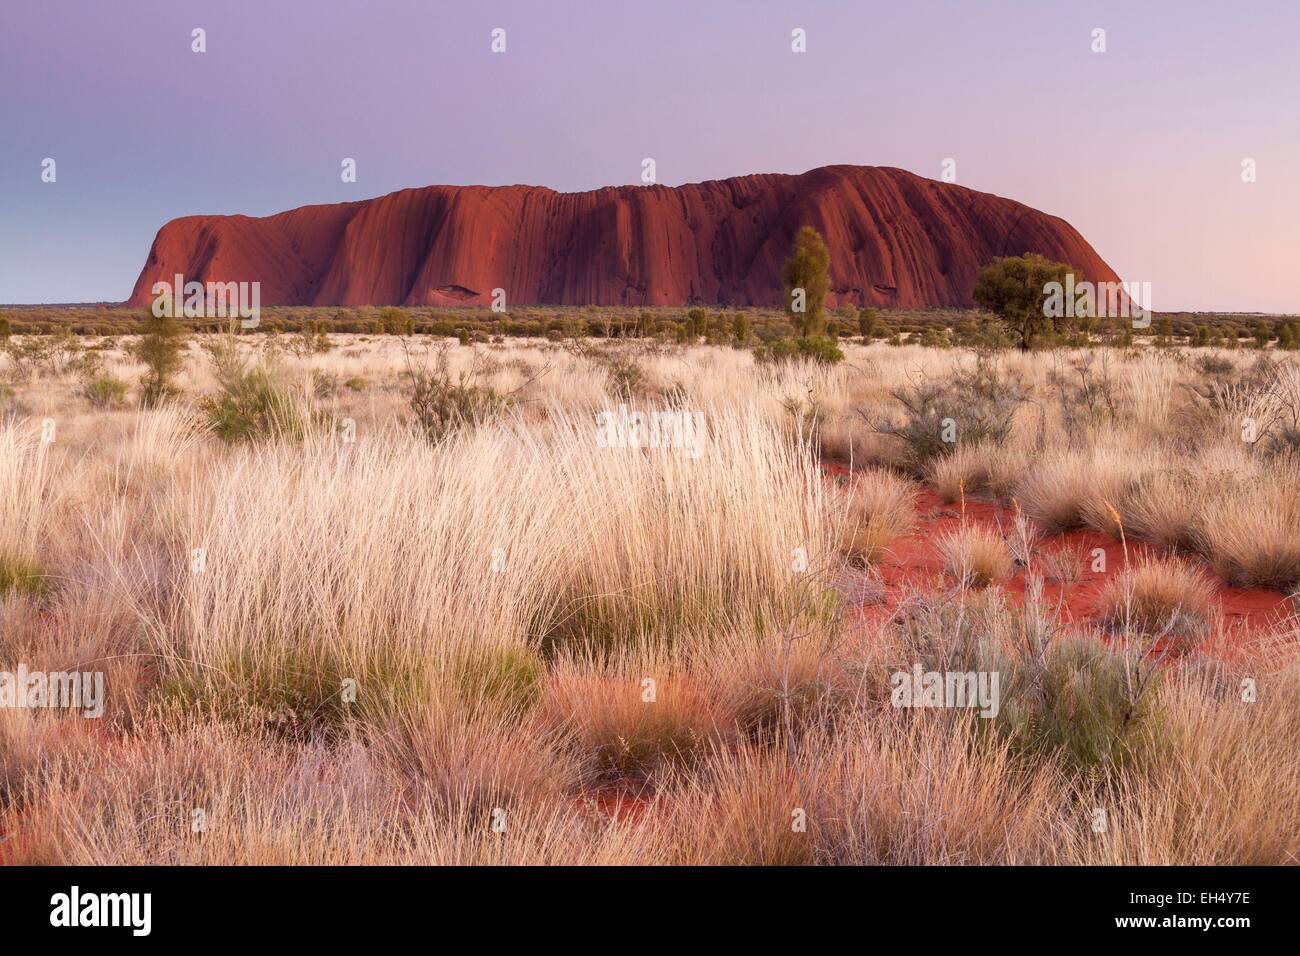 Australien, Northern Territory, Uluru-Kata Tjuta National Park als Weltkulturerbe der UNESCO, Ayers Rock oder Uluru aufgeführt, Sandstein rock heiligen Ort für die Ureinwohner Stockfoto